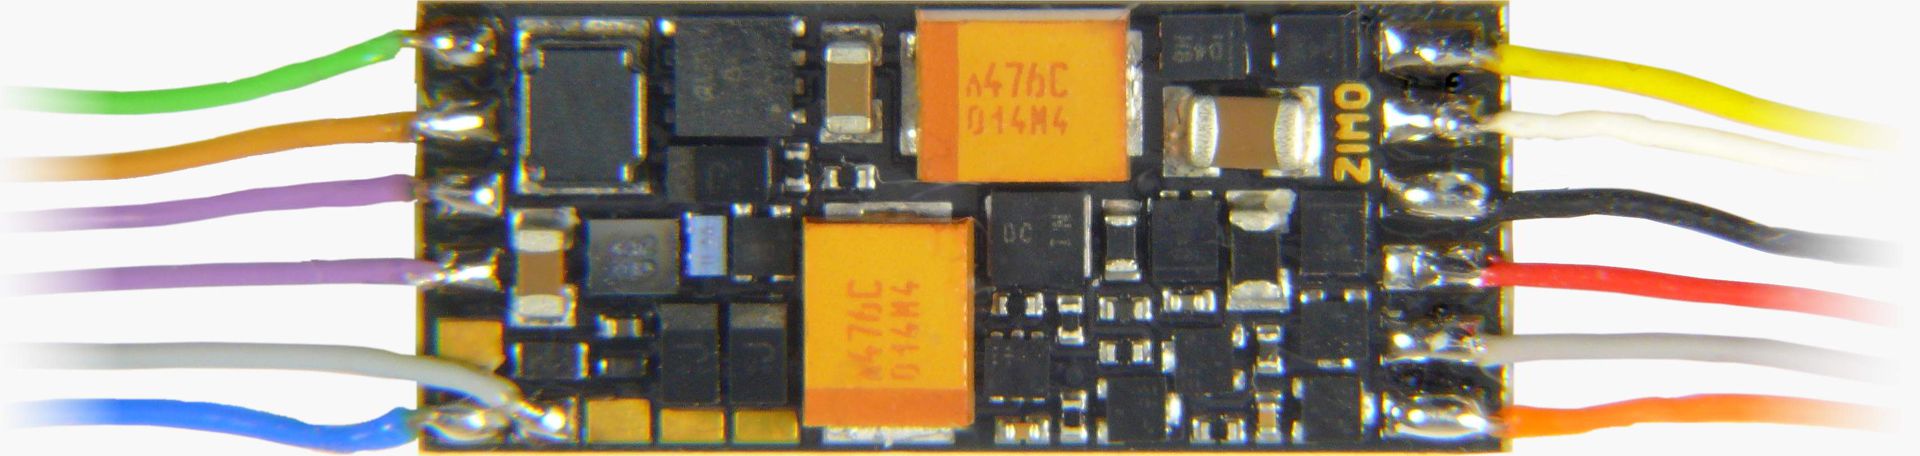 Zimo MS491R - Sounddecoder, NEM 652 an Drähten, 19 x 7,8 x 2,8 mm, 0,7 A